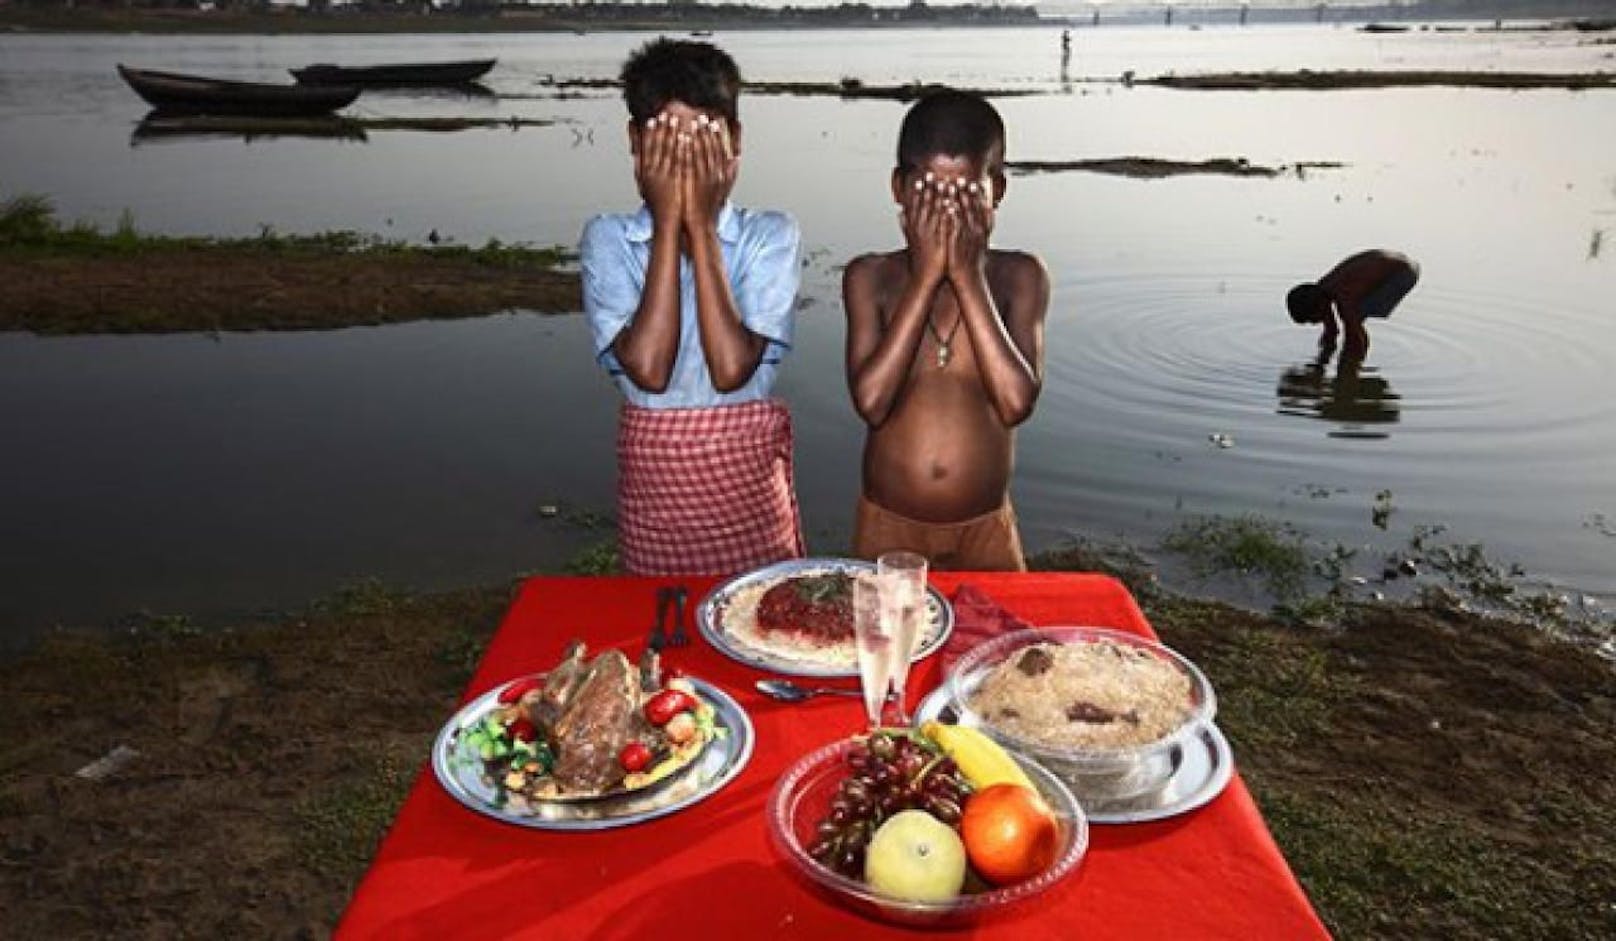 Unterernährte Kinder in Indien ließ der Fotograf vor unechten Lebensmitteln posieren. Für viele ausbeuterisch und &quot;Armuts-Porno&quot;.